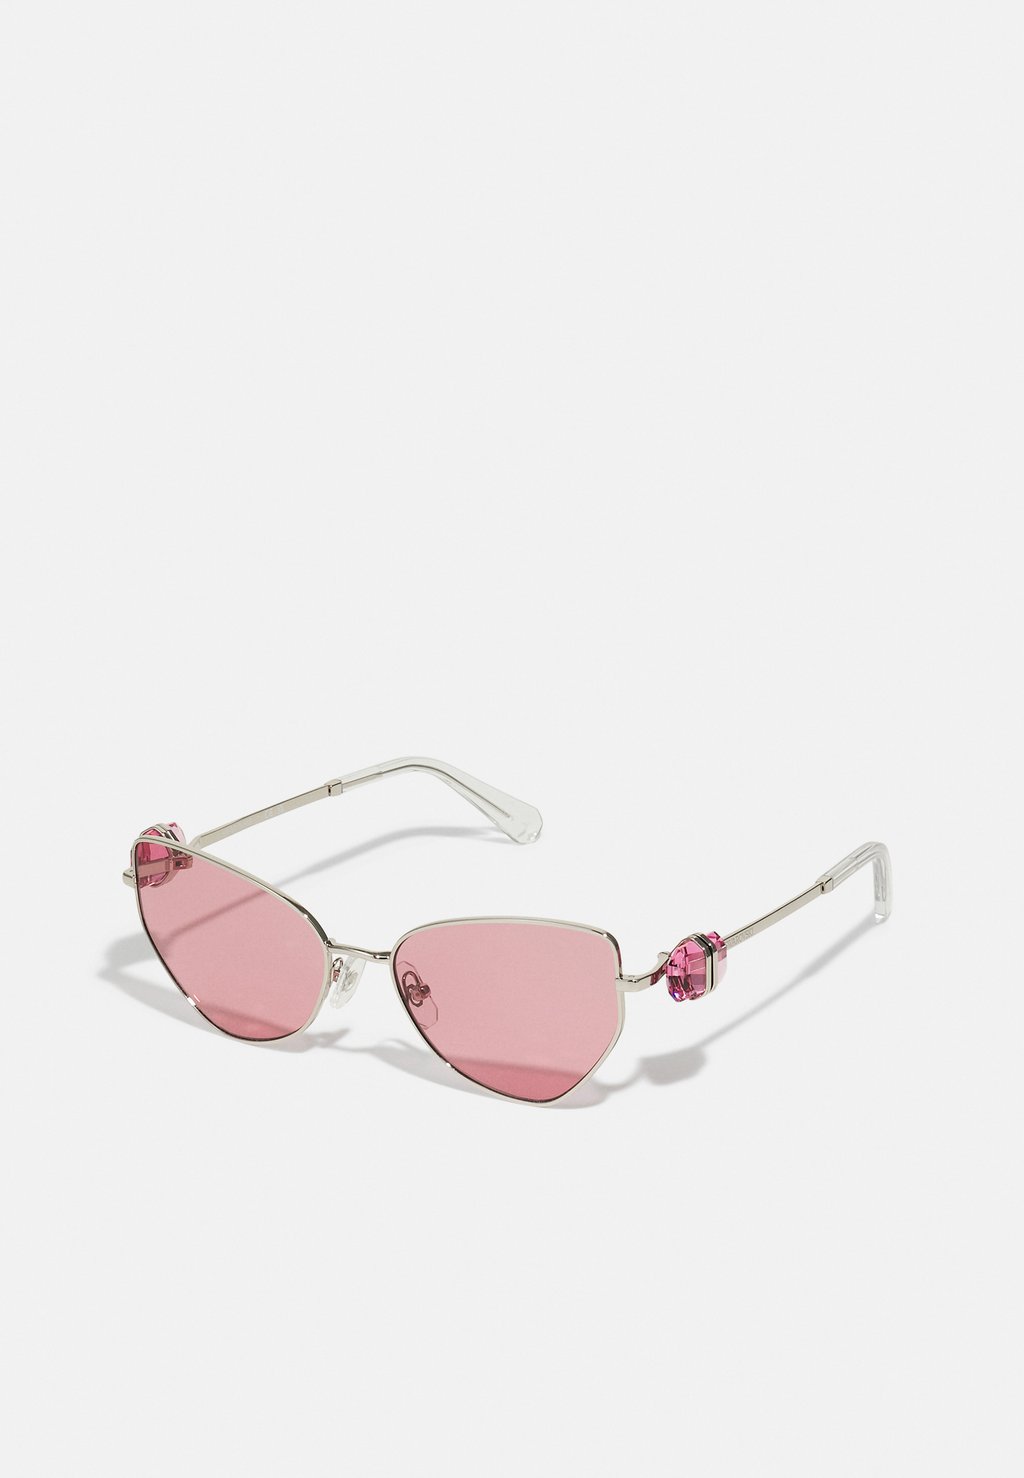 Солнцезащитные очки Swarovski, розовый солнцезащитные очки 5679531 lucent swarovski розовый